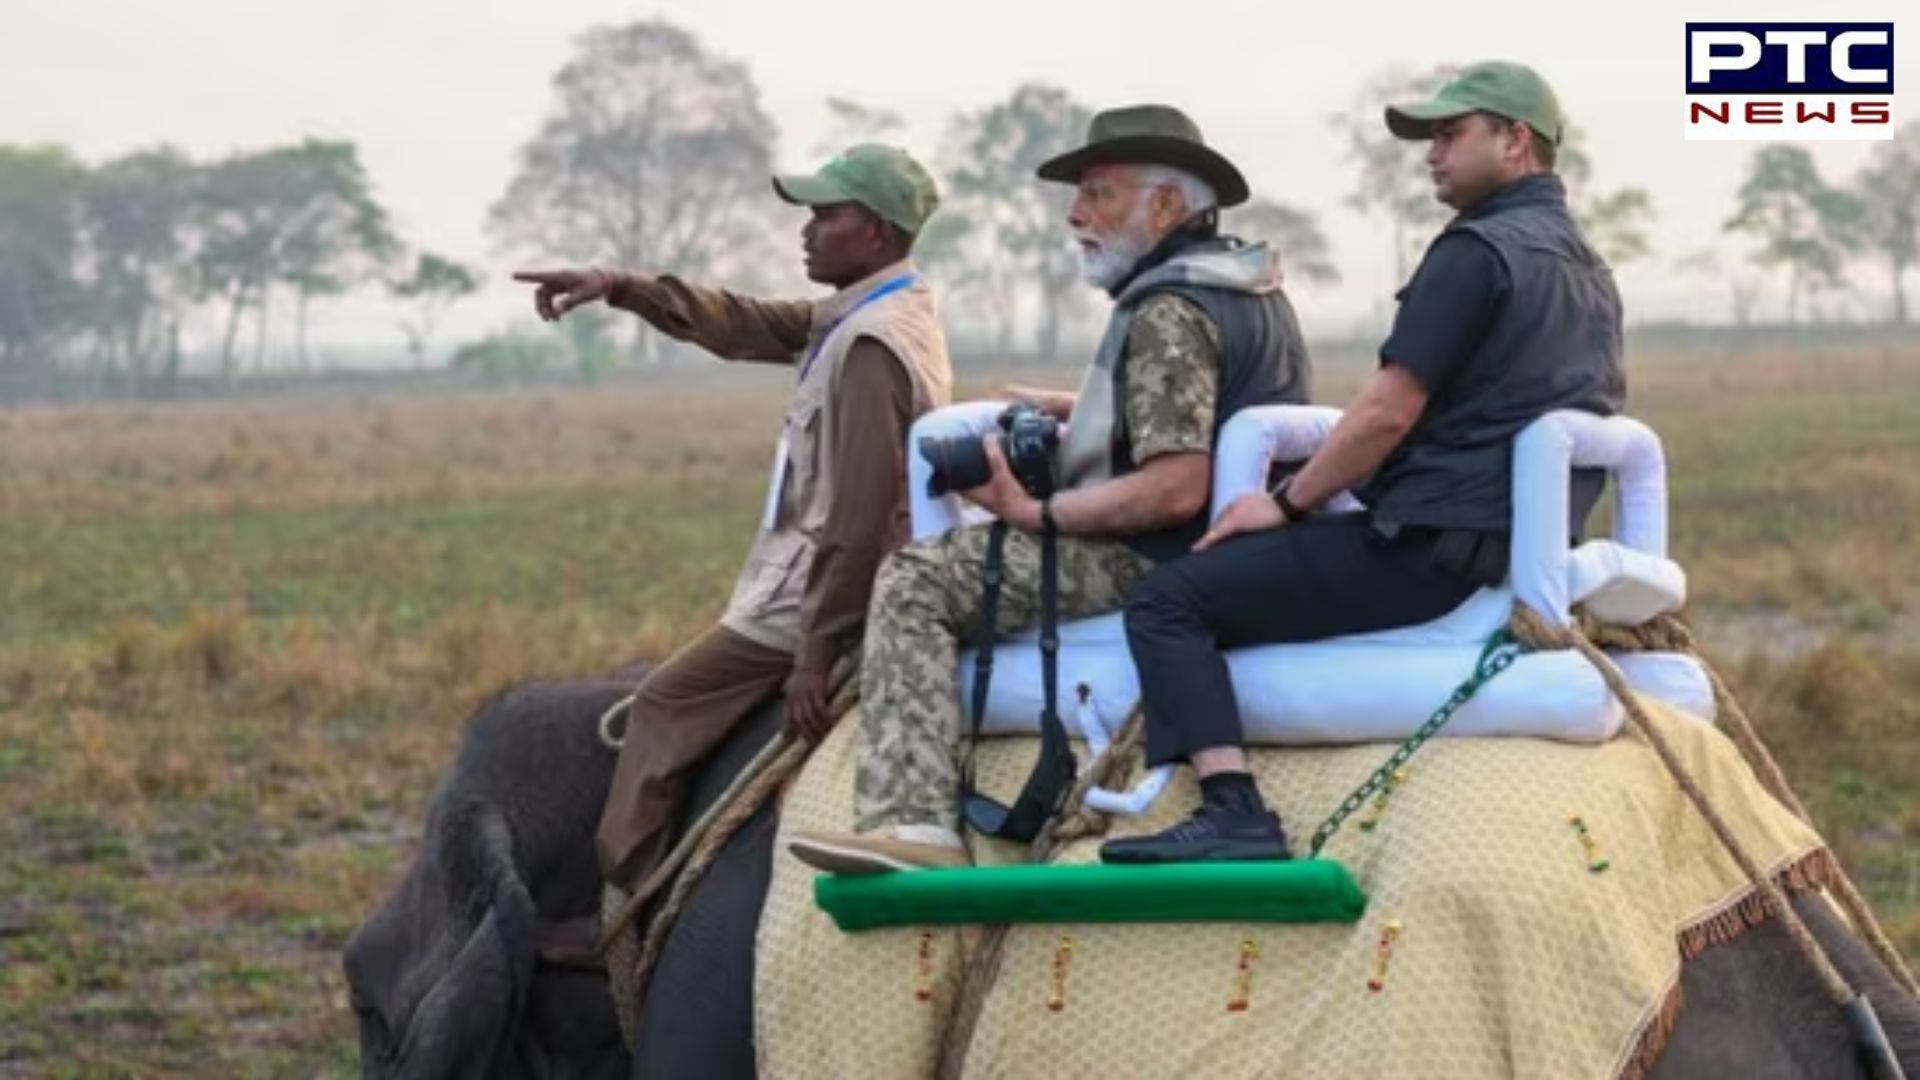 On Assam visit, PM Modi explores Kaziranga National Park with elephant & jeep safaris